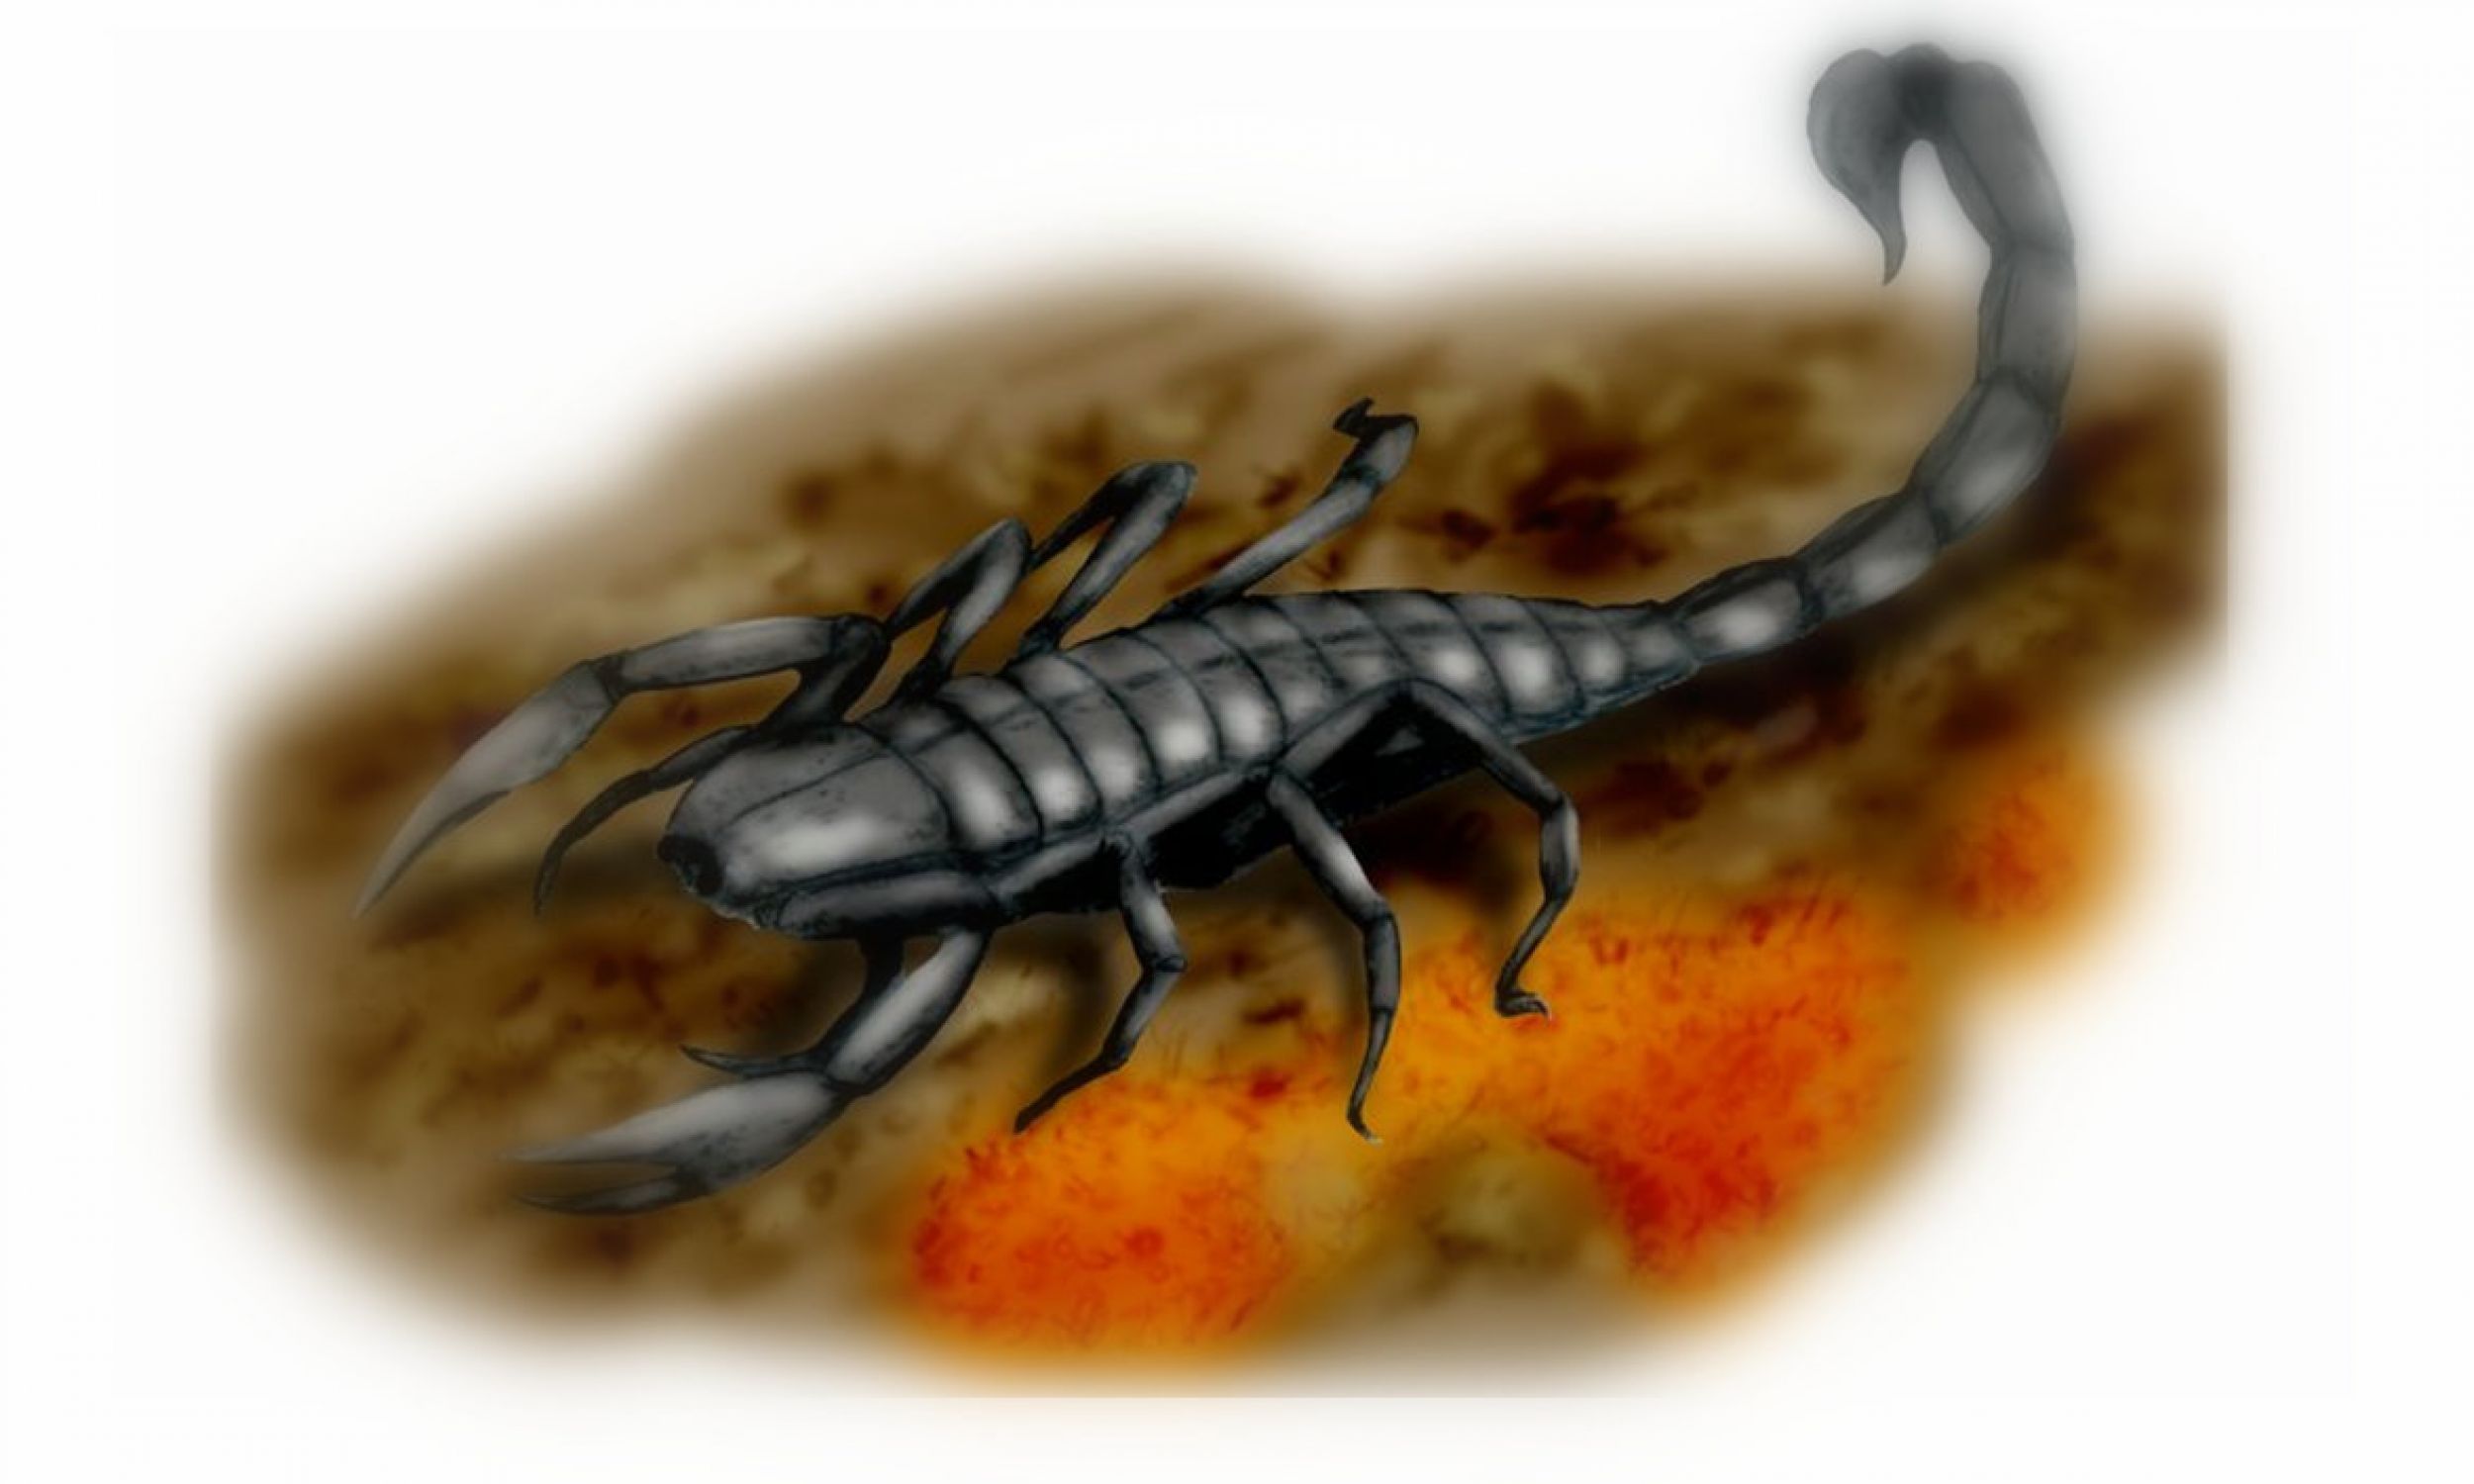 Pulmonoscorpius kirktonensis (dosłownie skorpion płucny) to wymarły gatunek olbrzymiego skorpiona, który żył w epoce wczesnego karbonu. Jego skamieniałości znaleziono w East Kirkton Quarry, West Lothian w Szkocji. Dieta Pulmonoscorpius nie jest dokładnie znana, ale mógł się żywić m.in. mniejszymi stawonogami, a jego żądło mogło też powalić małe czworonogi. Fot. Wikimedia Commons/Nobu Tamura (http://spinops.blogspot.com) - Praca własna, CC BY 3.0